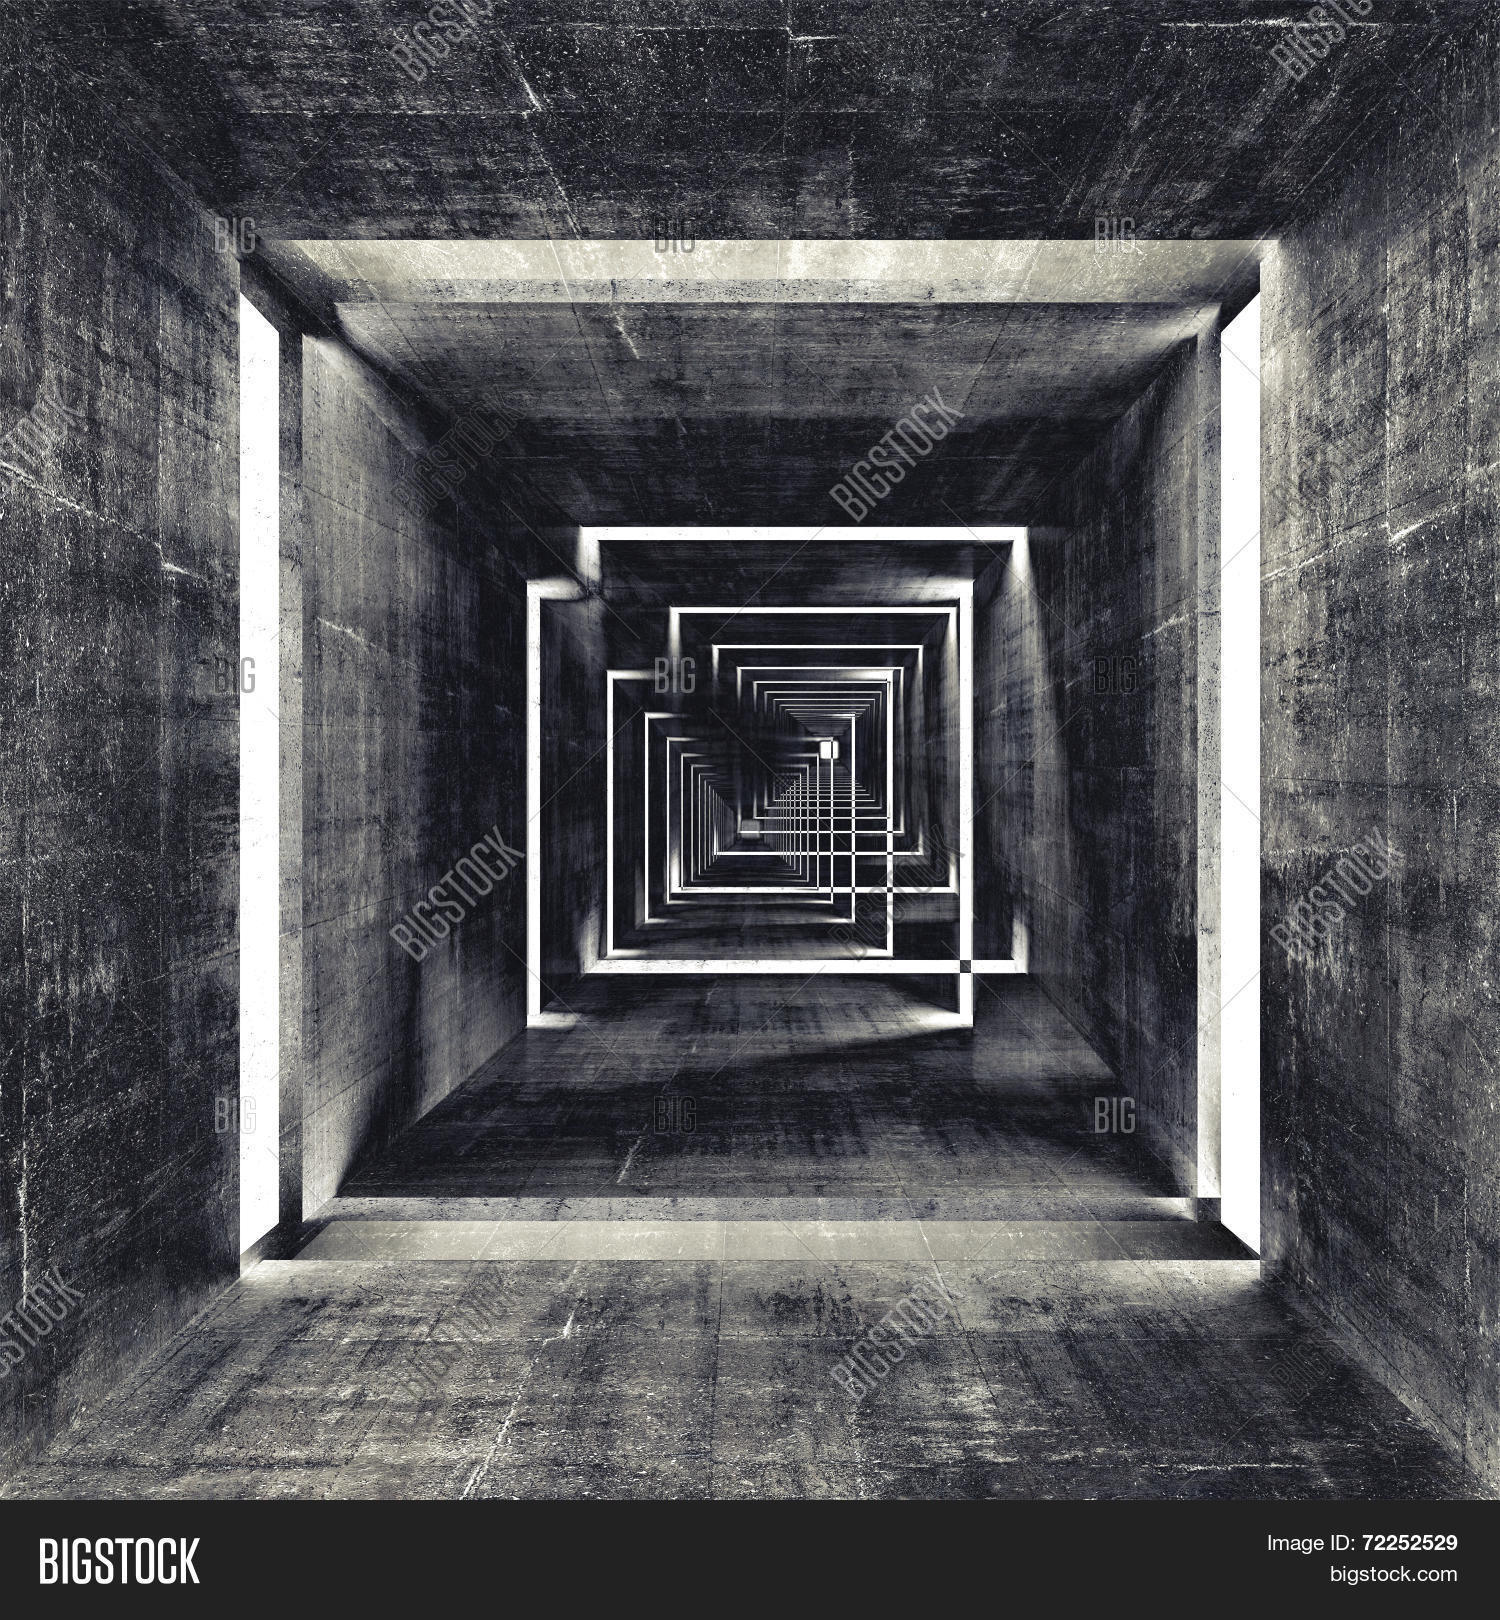 Abstract Square Dark Concrete Image & Photo | Bigstock